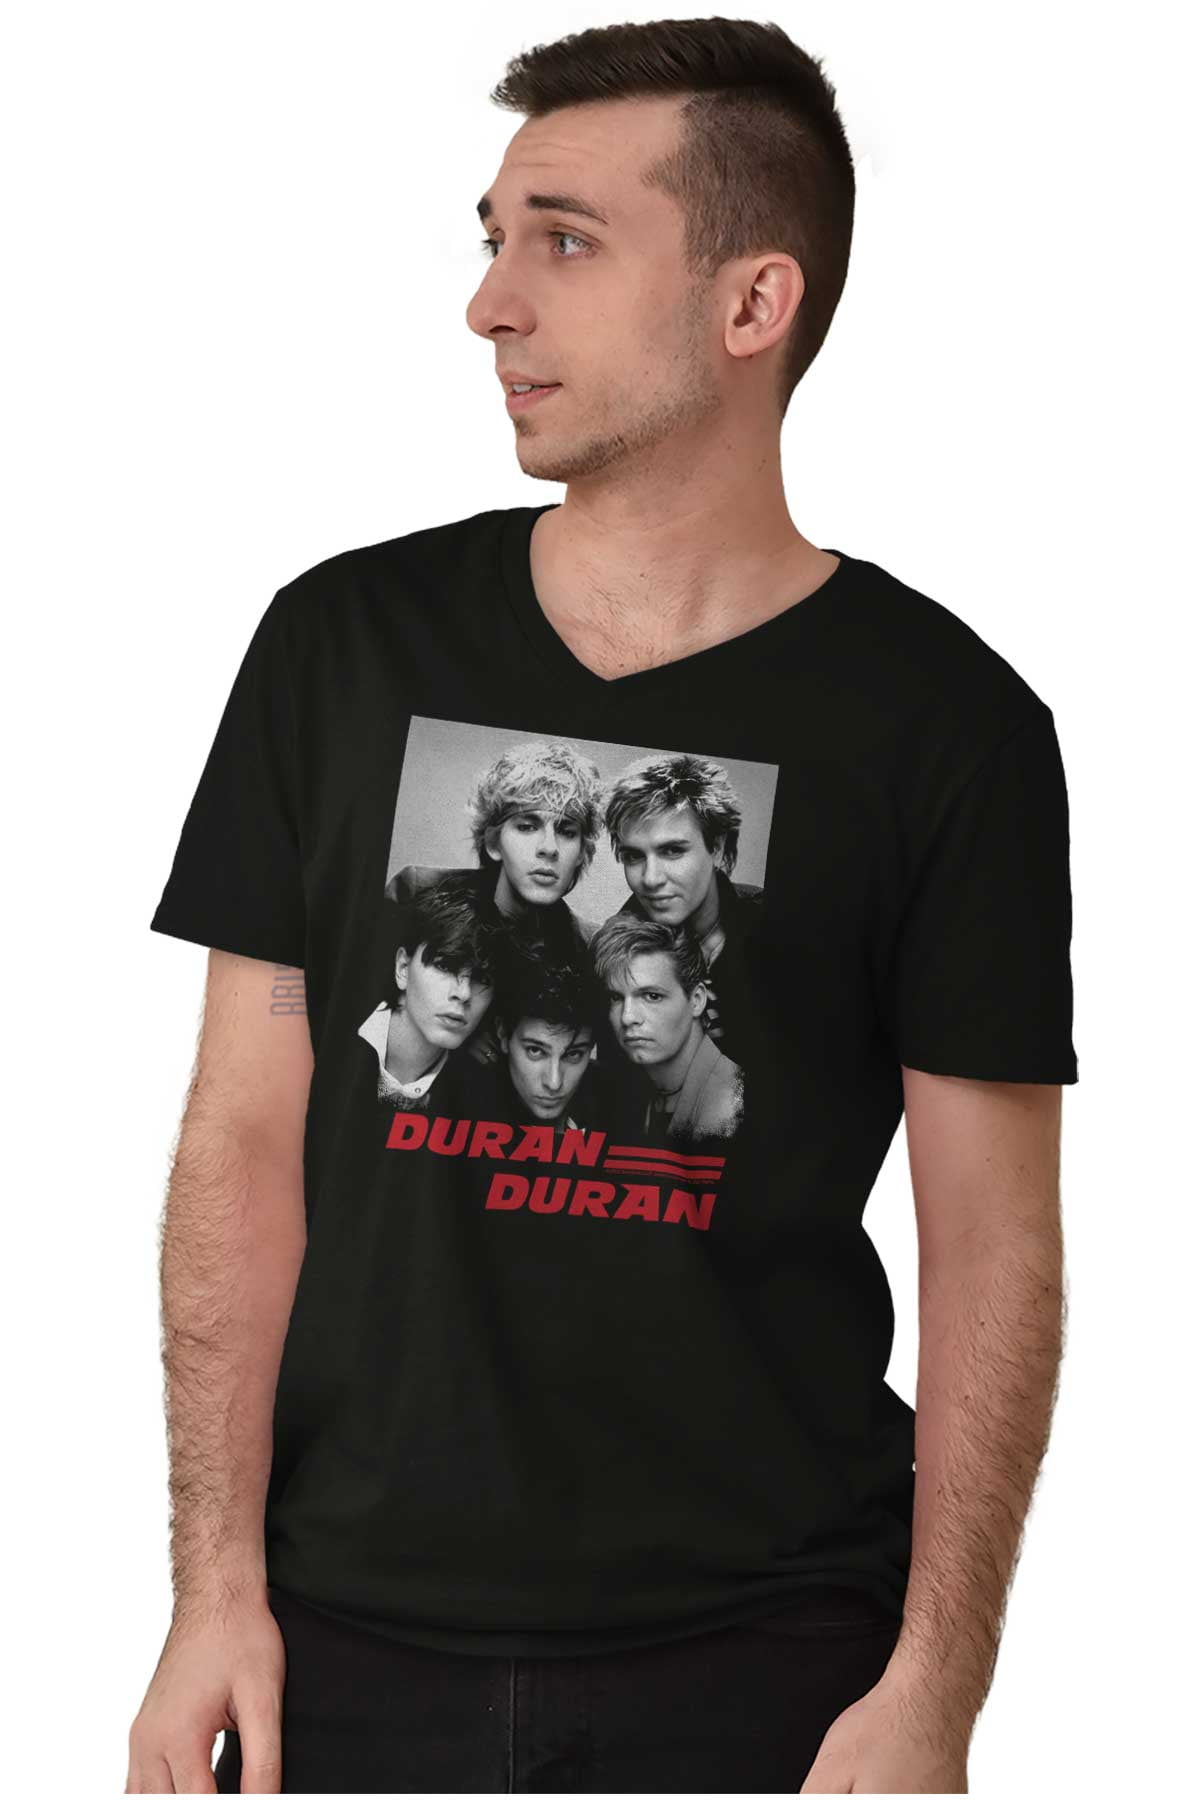 Duran Duran Vintage Rock Music V-Neck T Shirts Men Women Brisco Brands ...